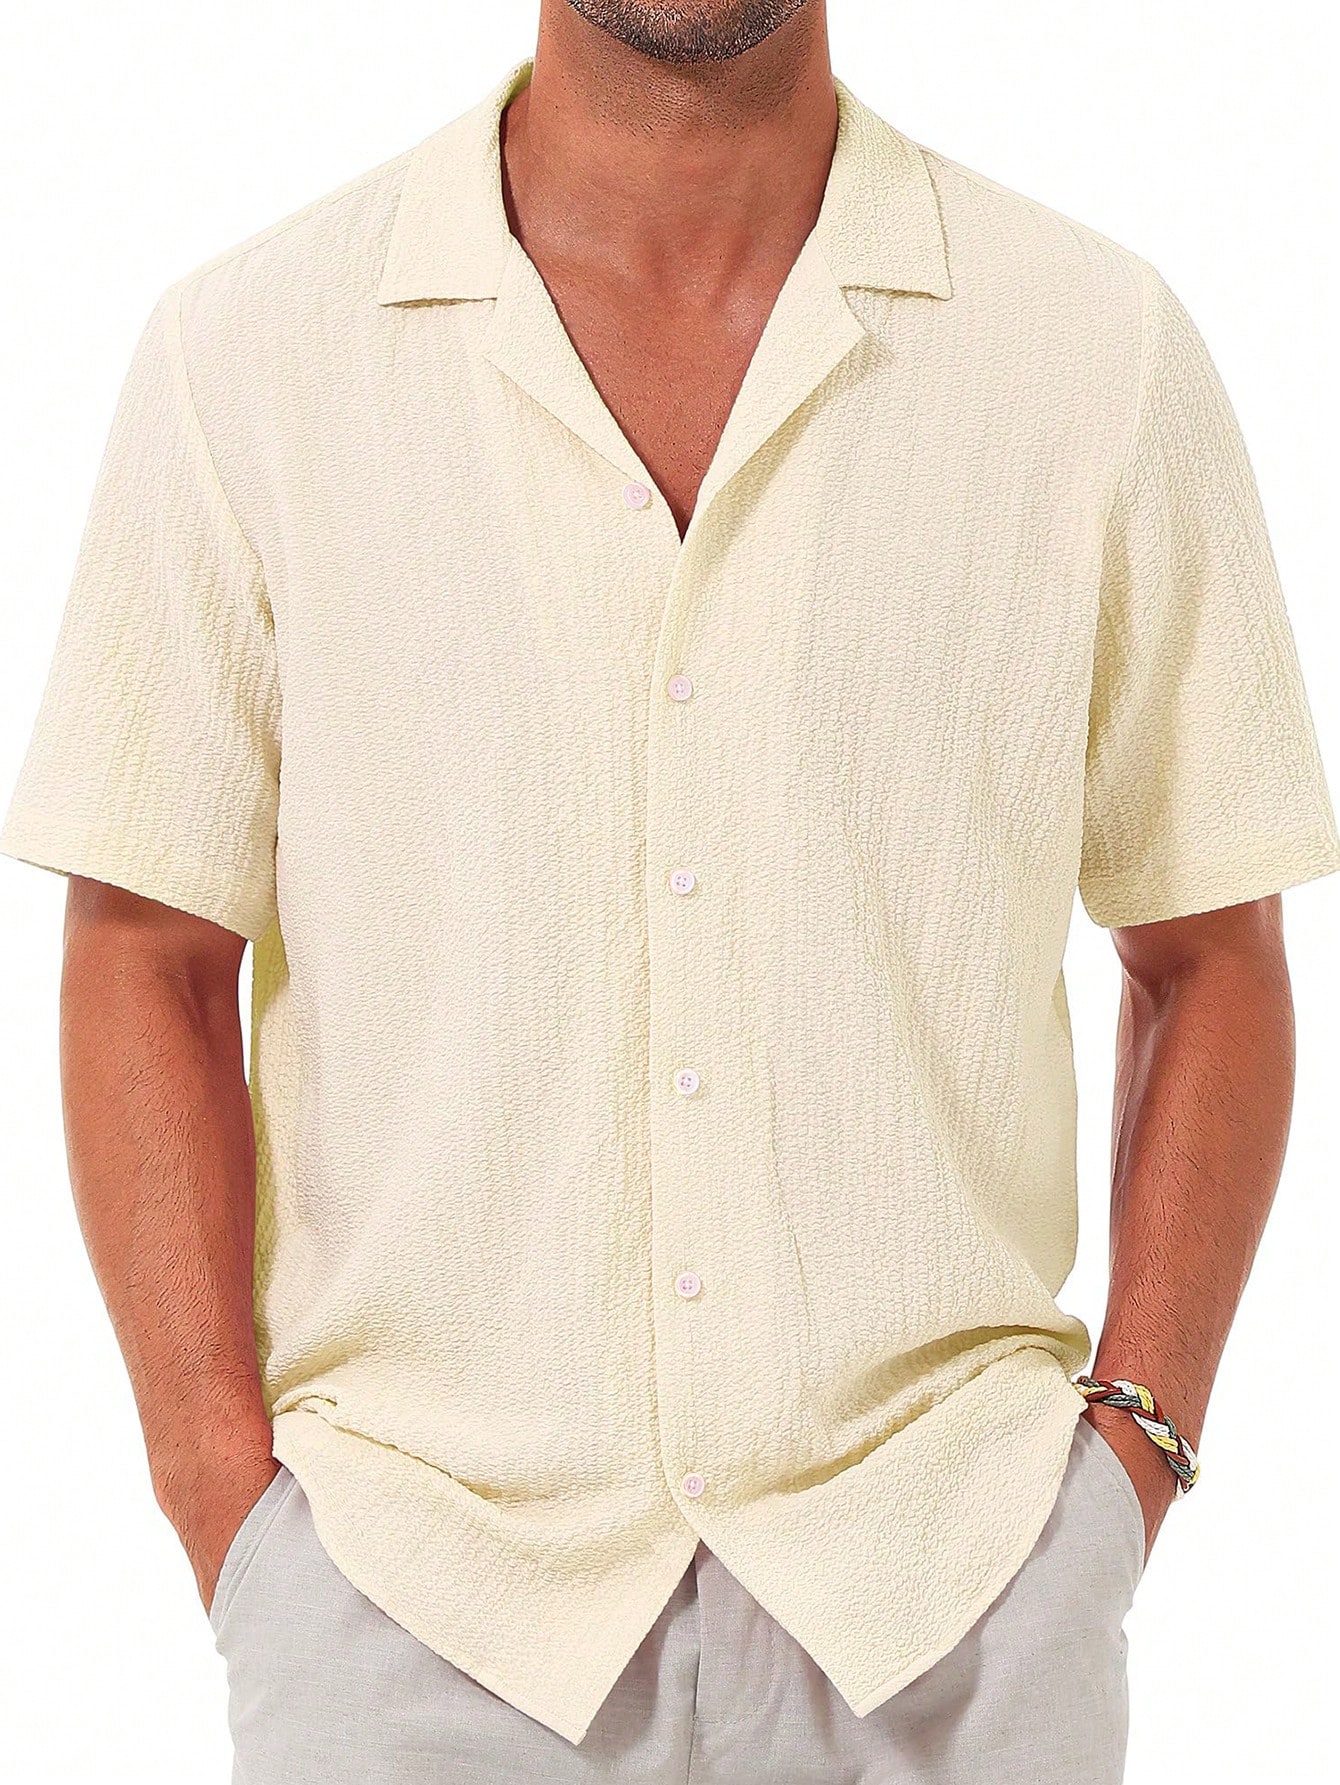 Мужская повседневная рубашка с коротким рукавом на пуговицах, бежевый рубашка мужская с коротким рукавом цифровым принтом на пуговицах повседневная домашняя одежда лето